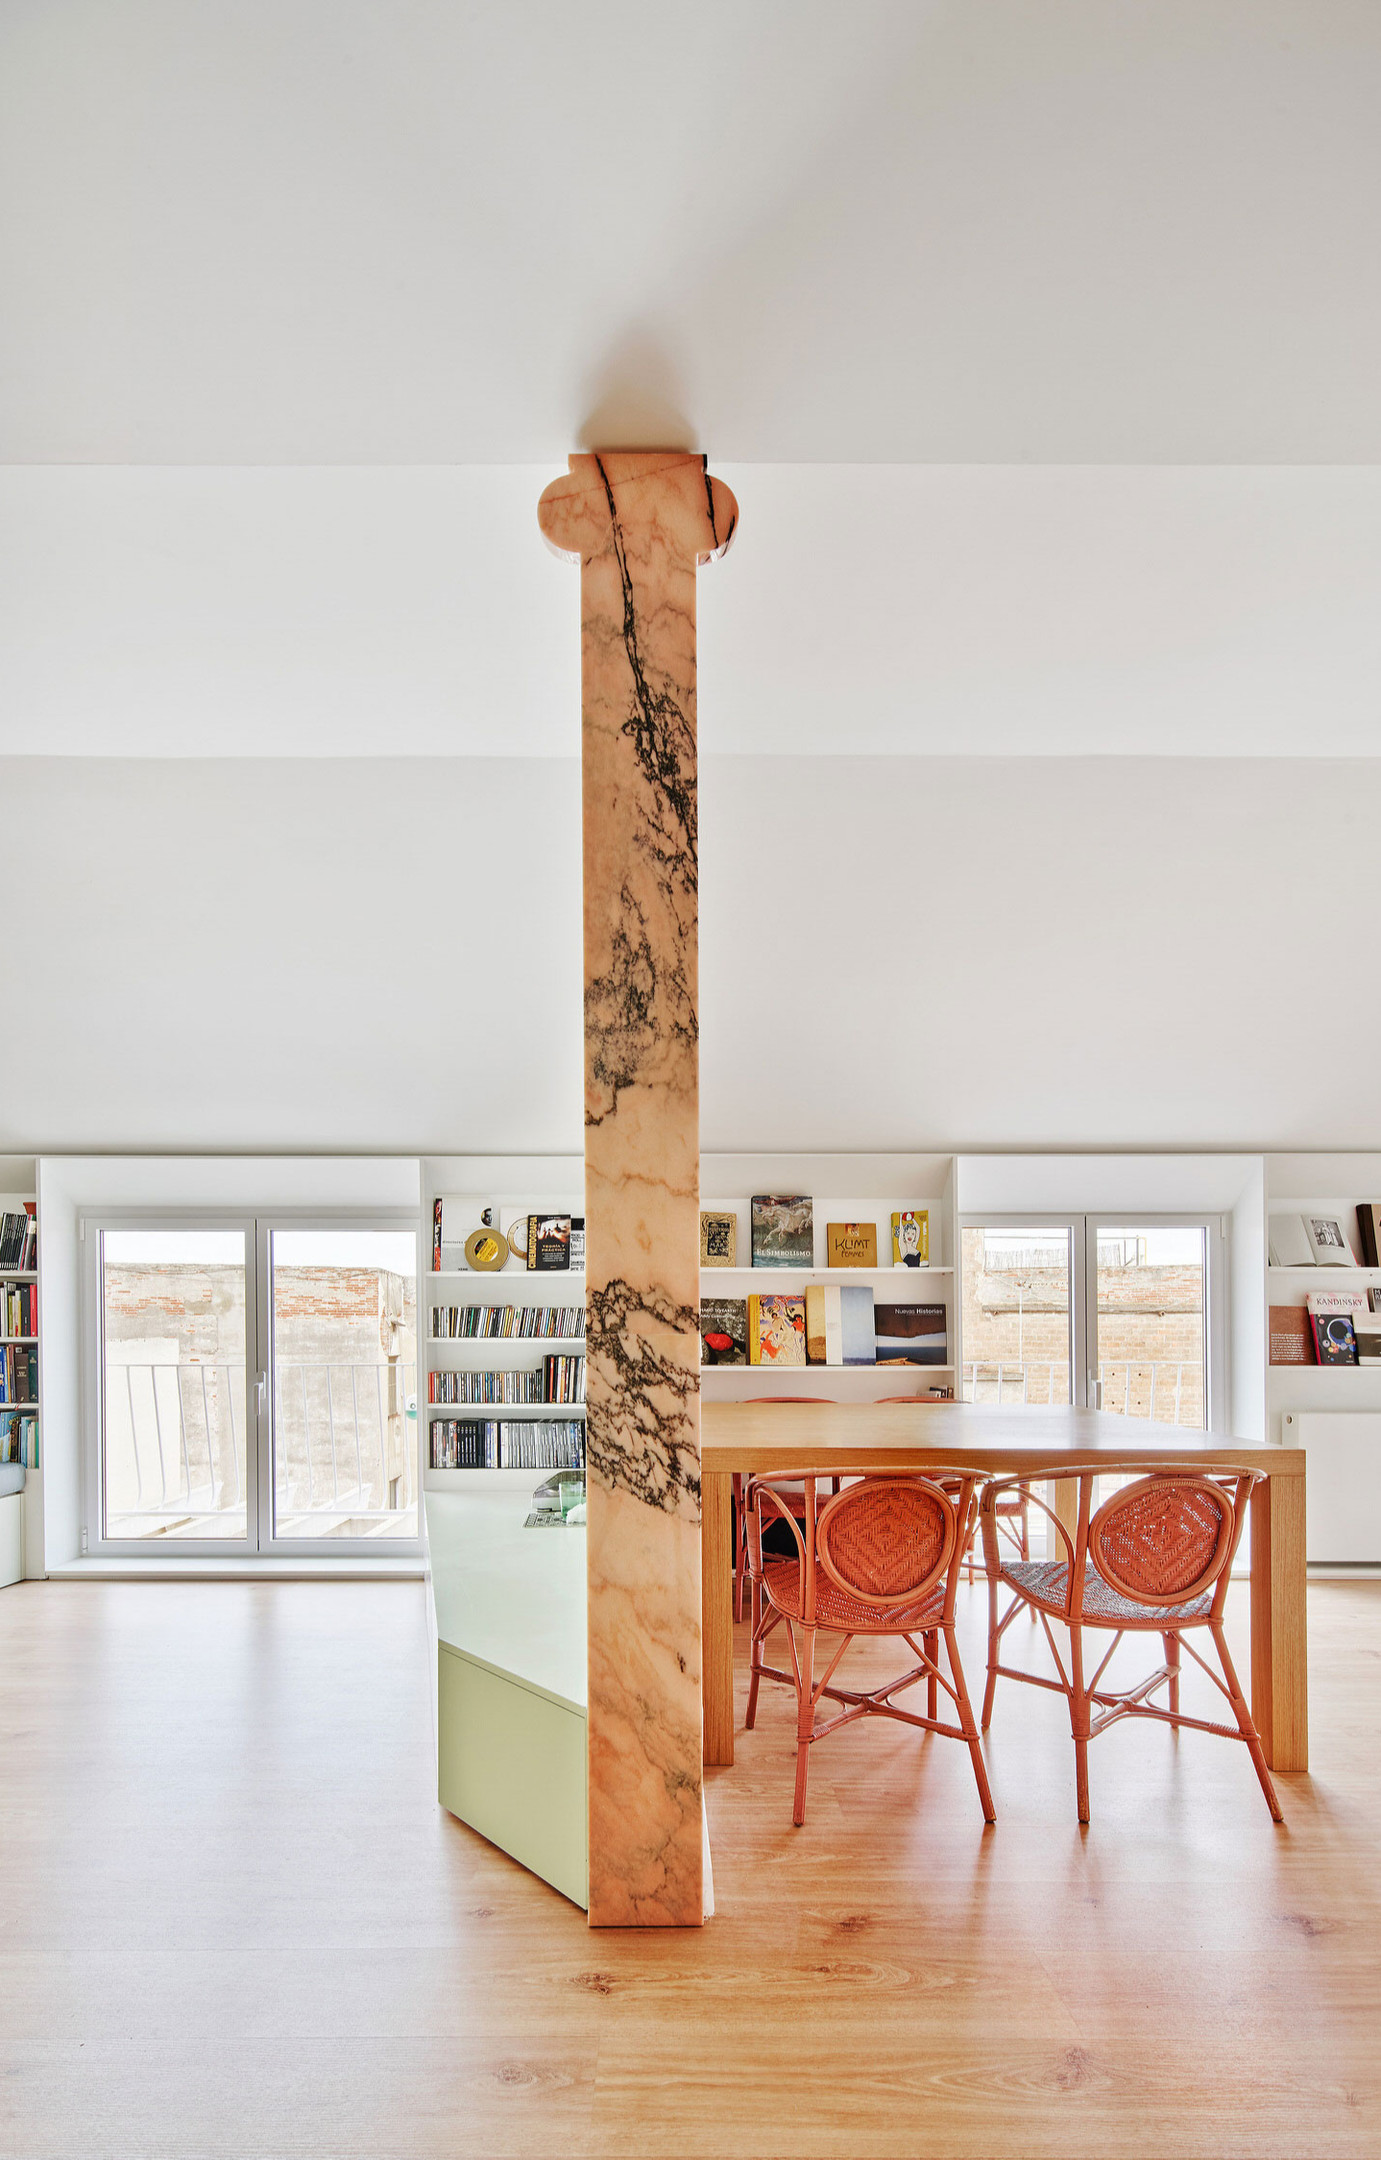 AMOO Studio thiết kế nội thất cho căn hộ ở Barcelona với chiếc cột cố định phân vùng các khu vực chức năng trong nhà, xung quanh trụ ốp đá màu cam nhạt với đường vân màu xám khói mơ màng.